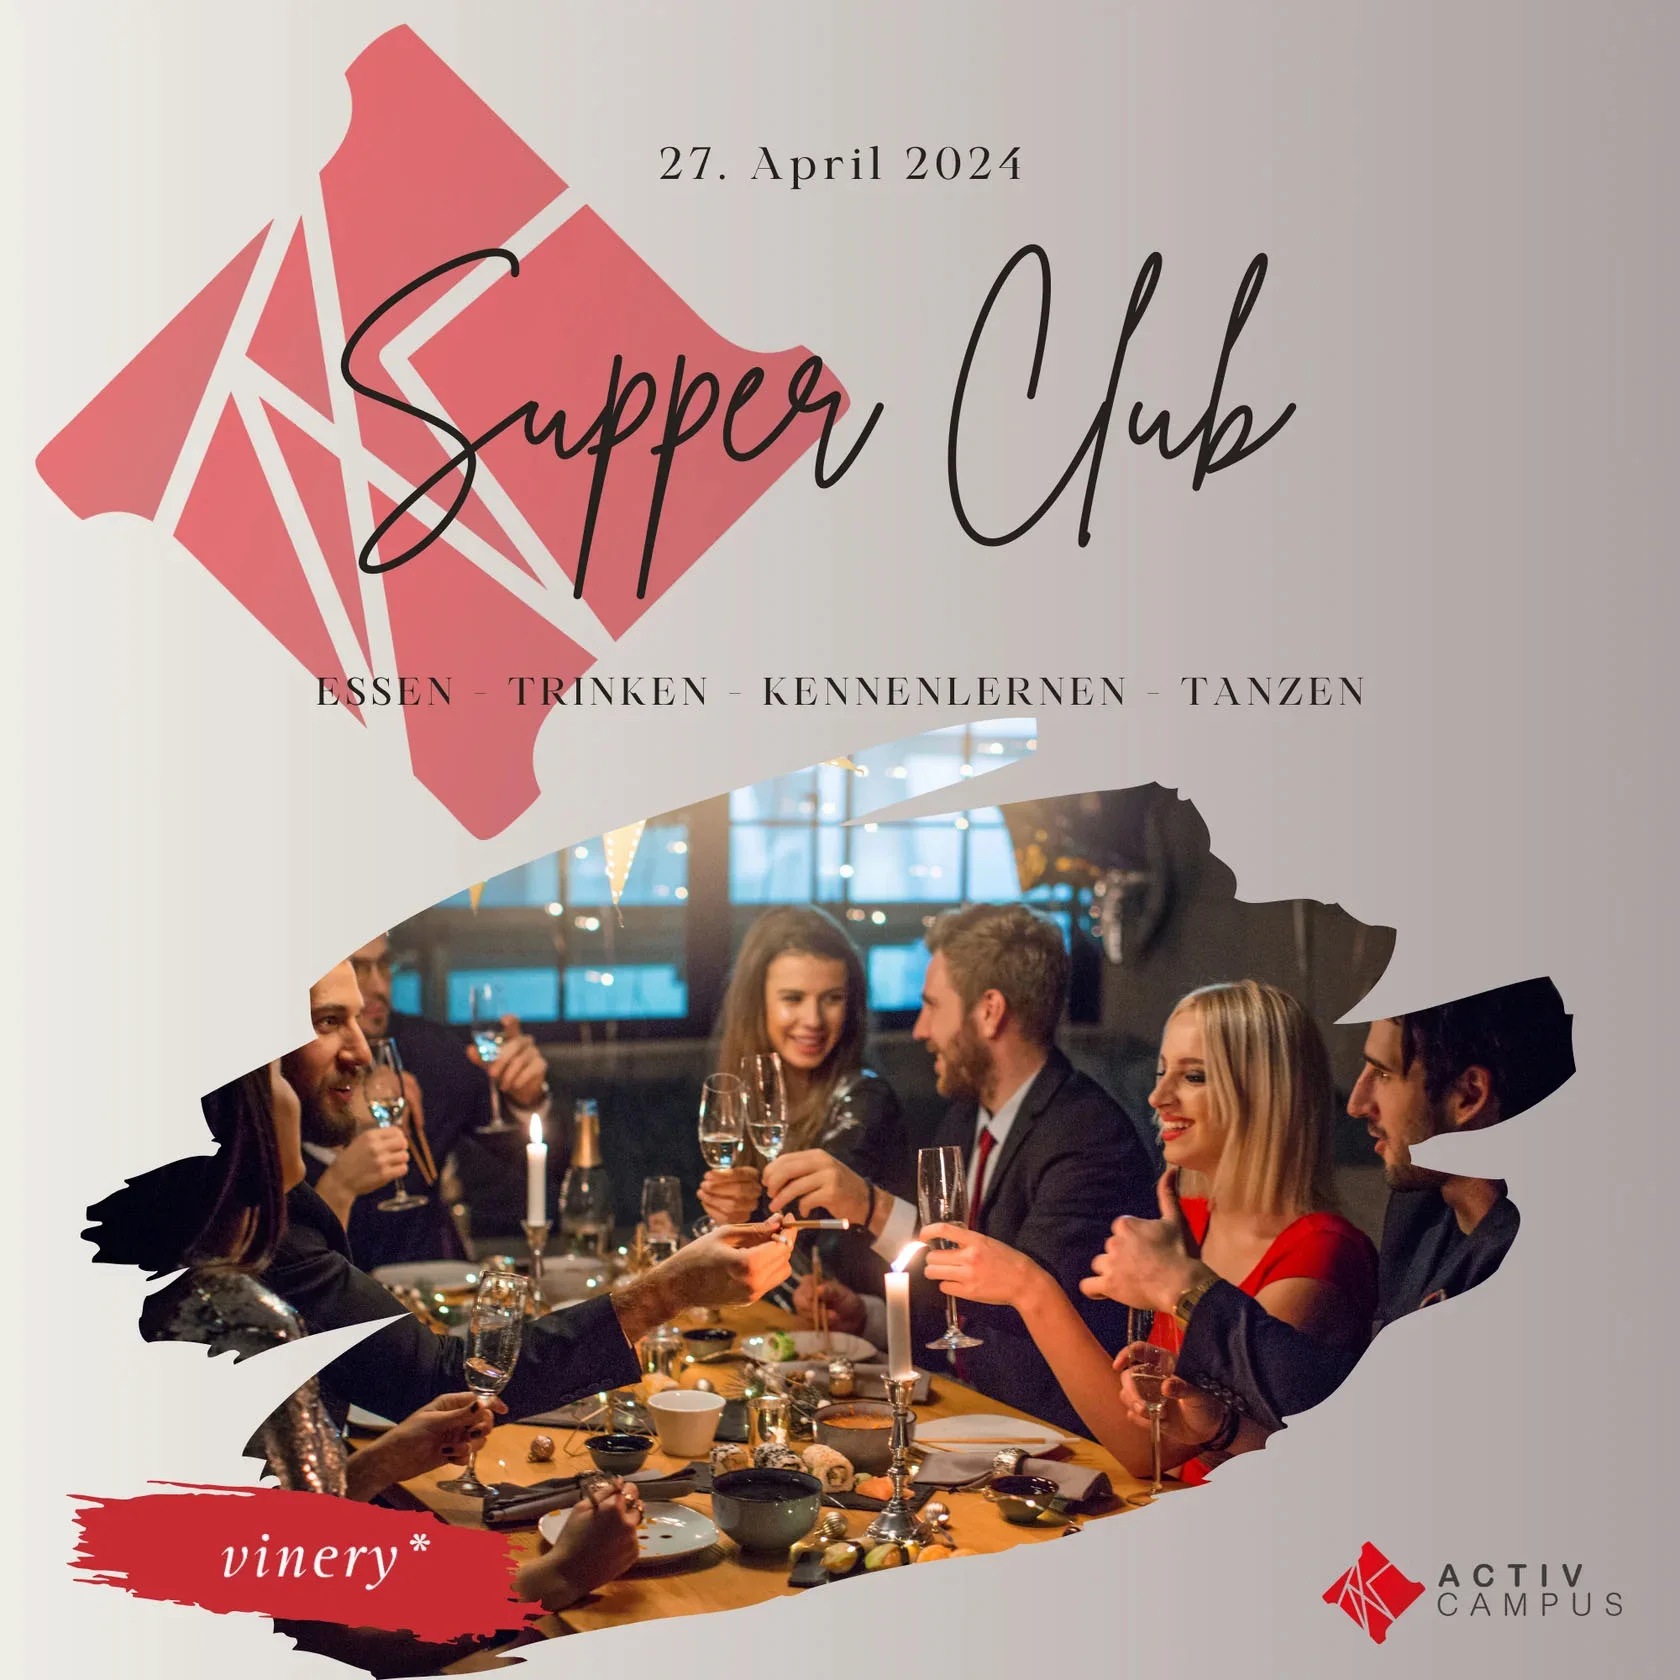 Zeit für neue Erfahrungen - Supper Club im ACTIV CAMPUS in Bochum